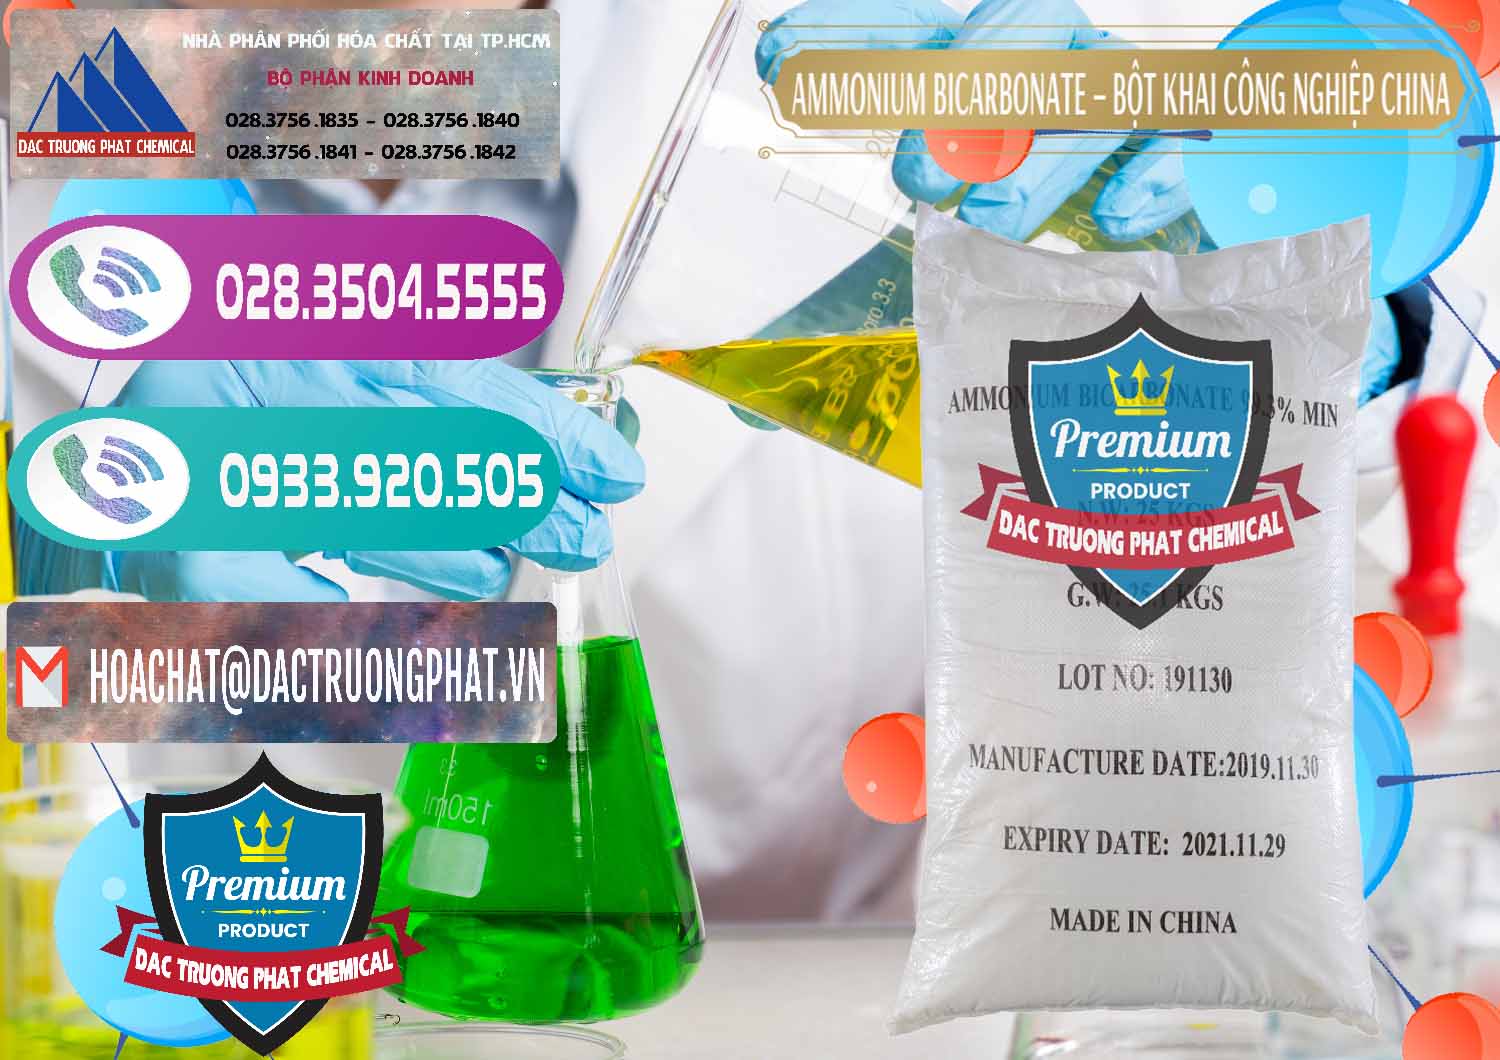 Bán ( cung cấp ) Ammonium Bicarbonate – Bột Khai Công Nghiệp Trung Quốc China - 0020 - Đơn vị phân phối ( cung cấp ) hóa chất tại TP.HCM - hoachatxulynuoc.com